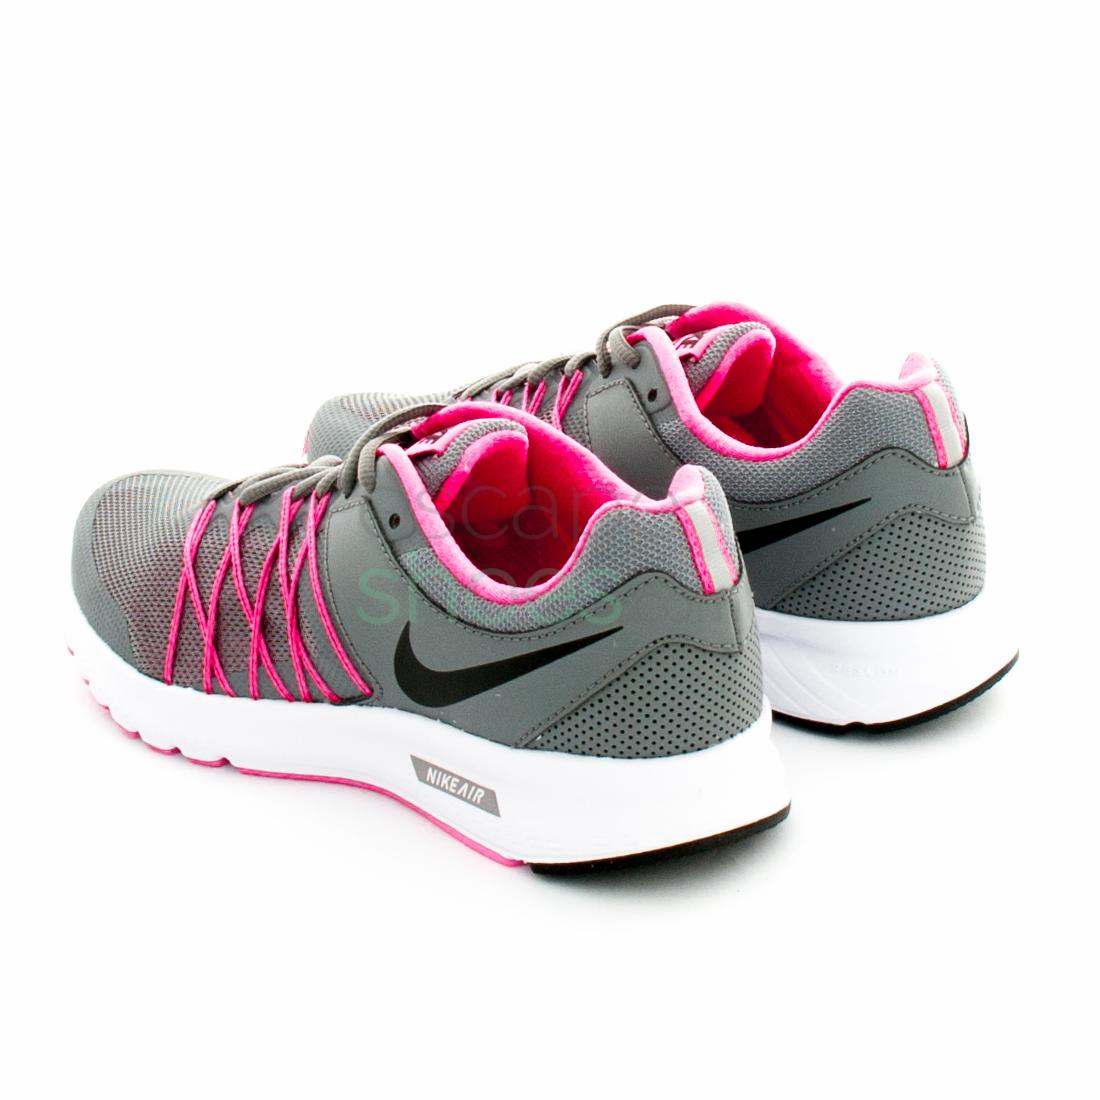 Sneakers Air Relentless 6 Cool Grey Pink 843882 002